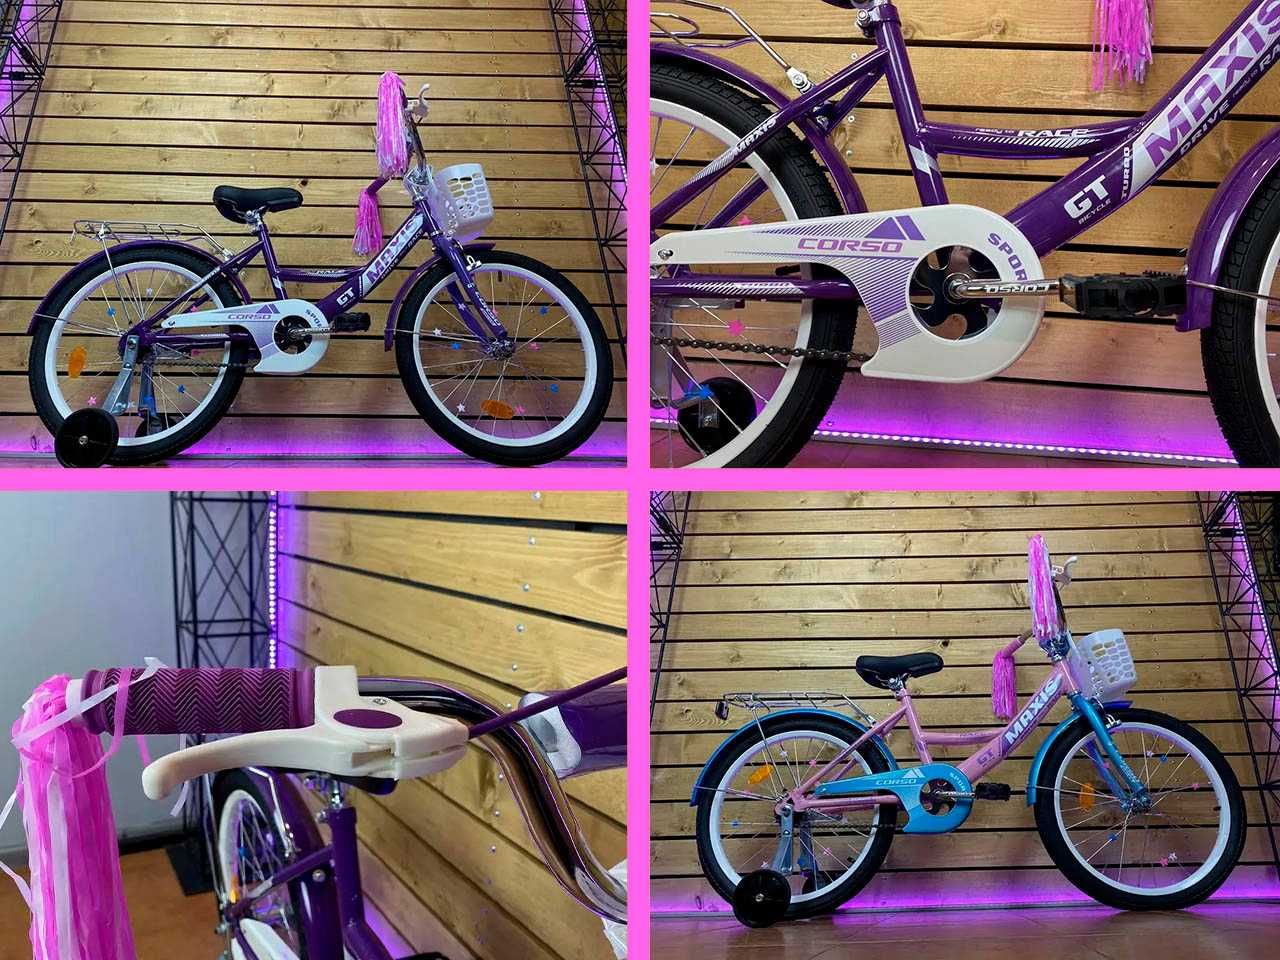 Дитячий дитячий велосипед CORSO Maxis 12' 14' 16' 18' 20' Всі розміри!